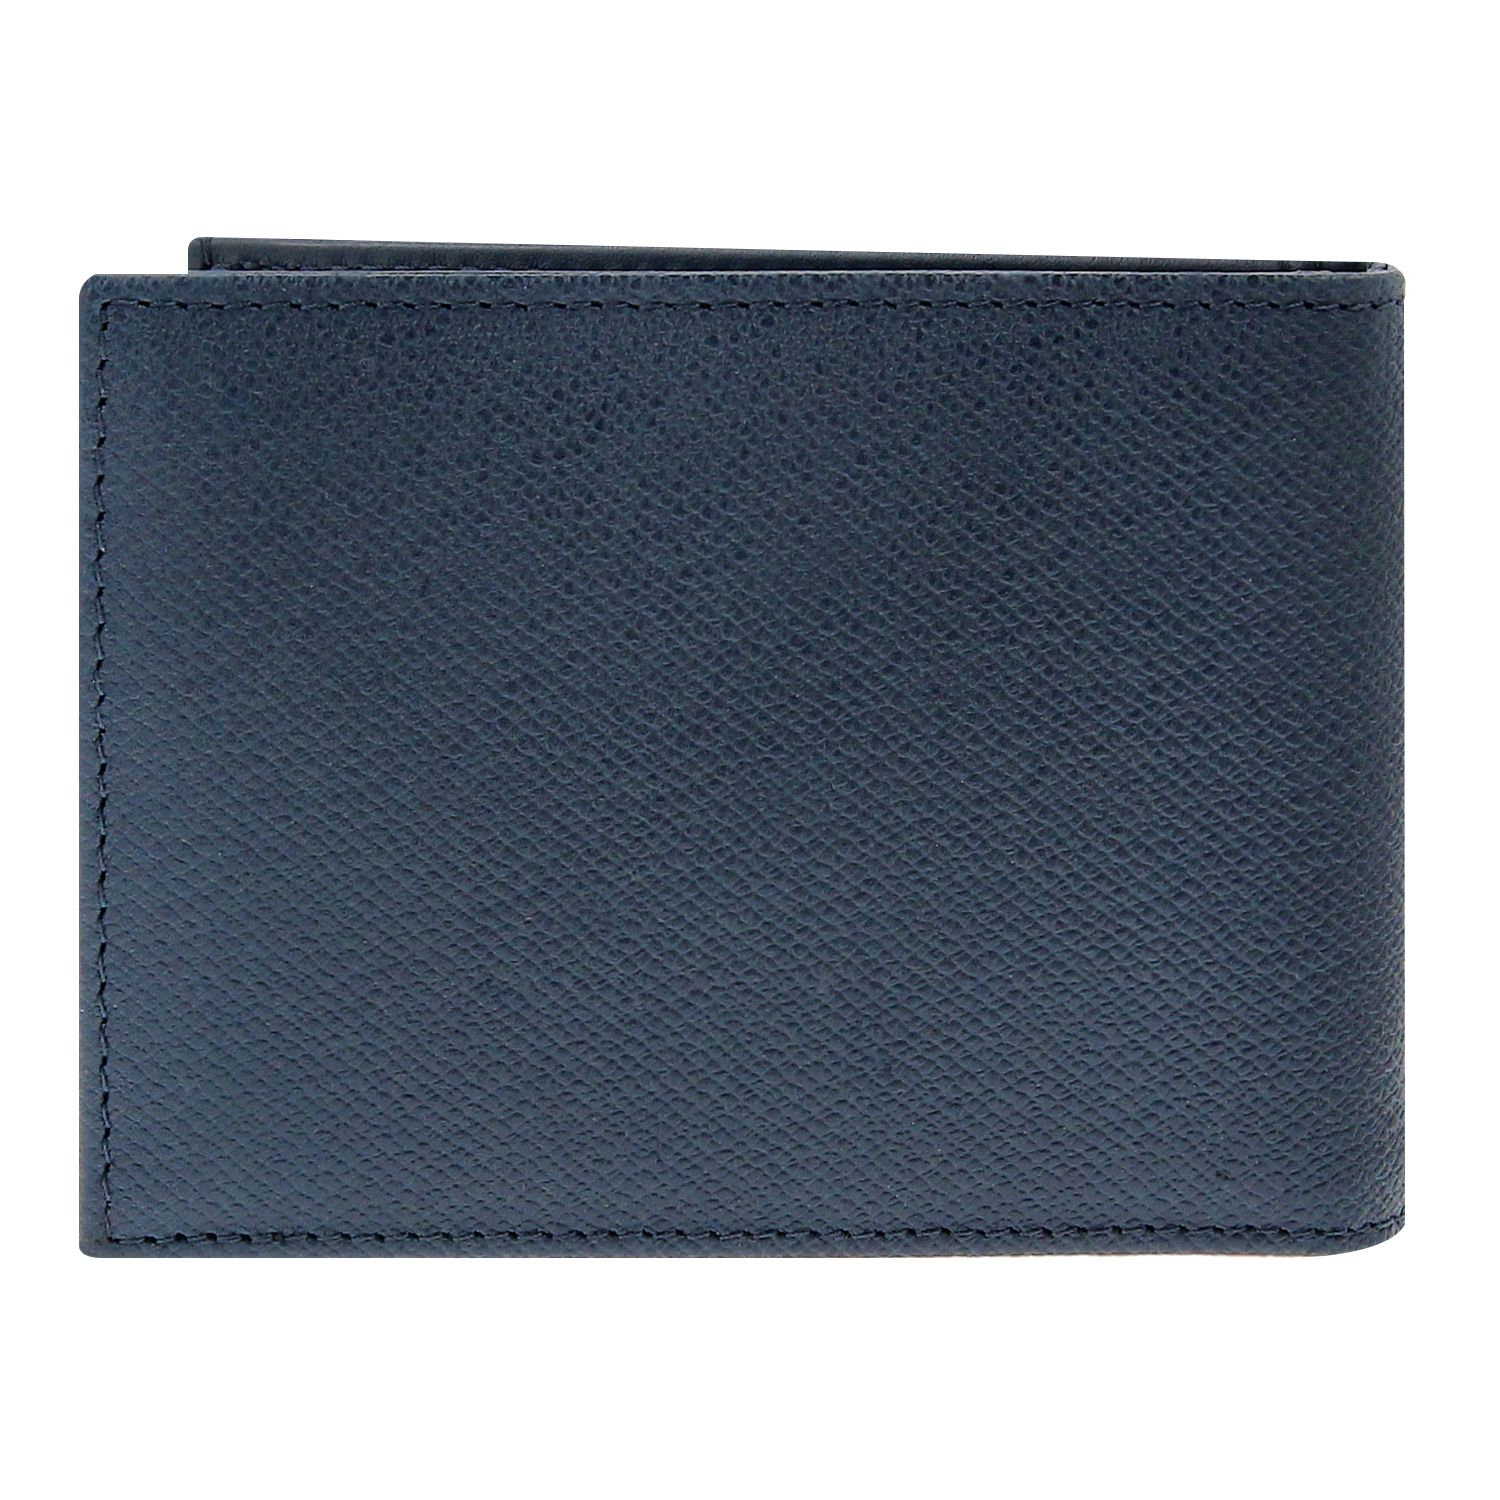 Buy Crossing Elite Slim Leather Wallet [8 Card Slots] RFID - Jeans in ...